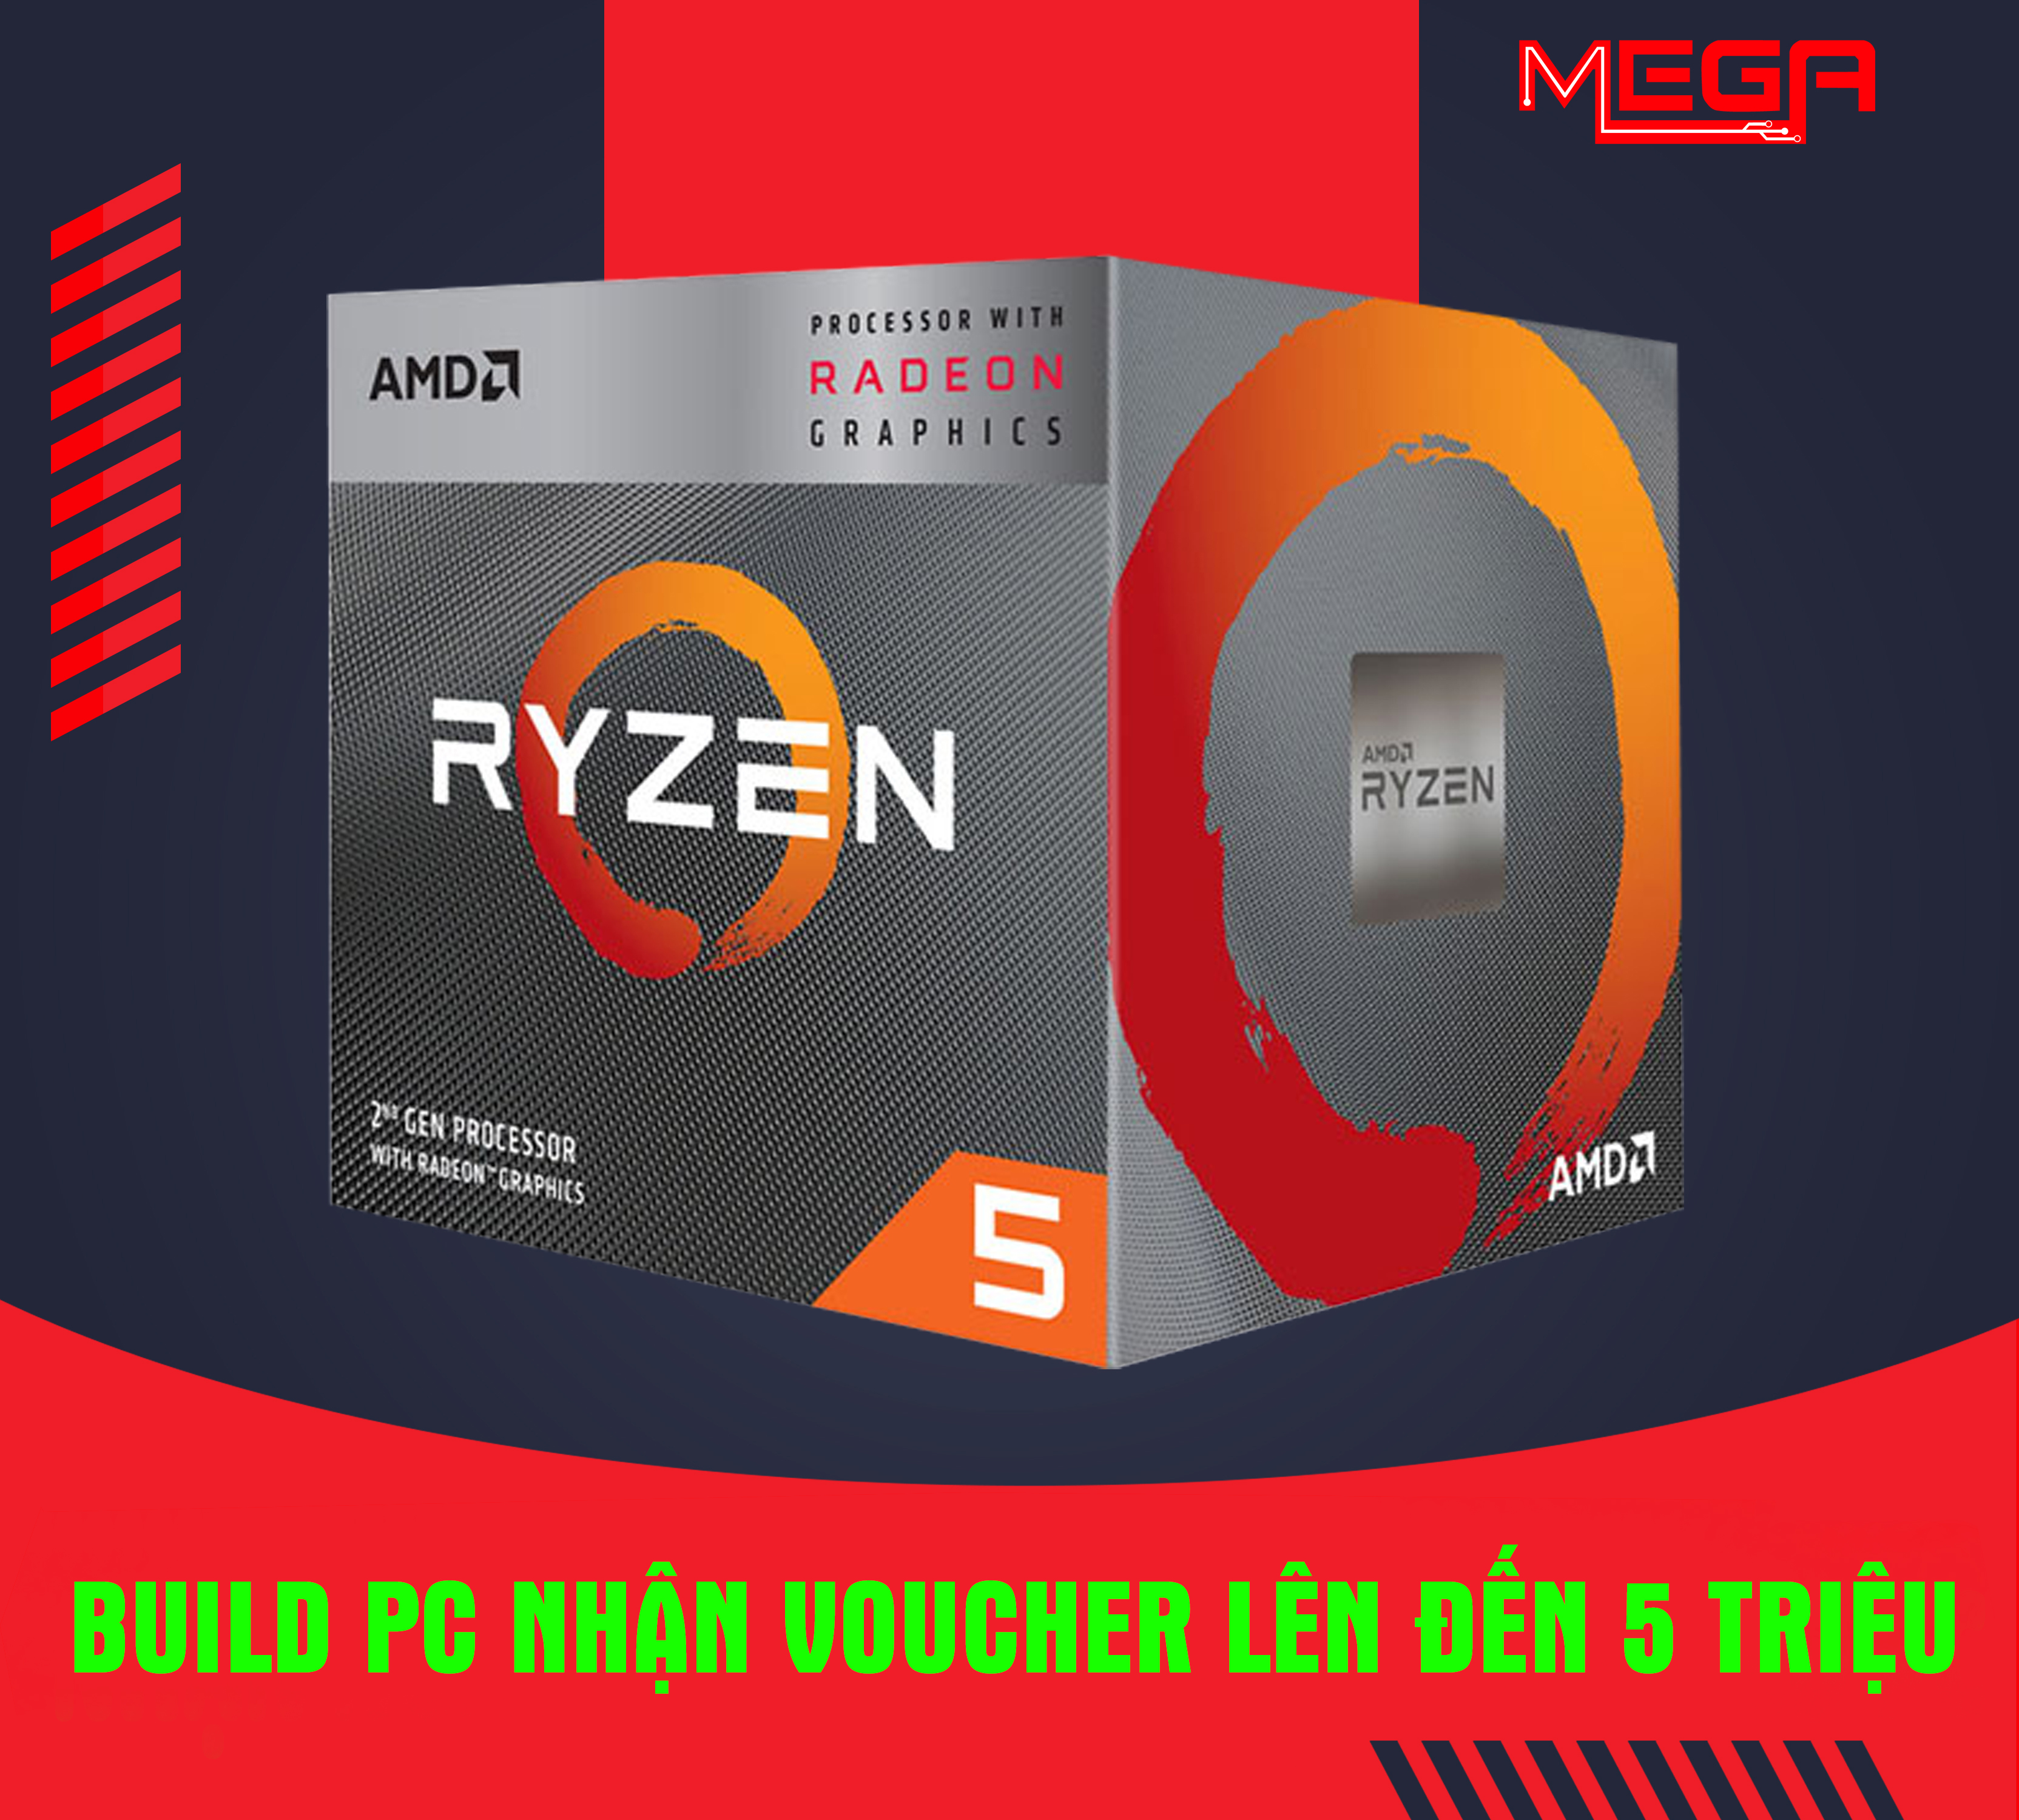 AMD Ryzen 5 3600 4 2GHz AM4 36MB Cache Wraith Spire 